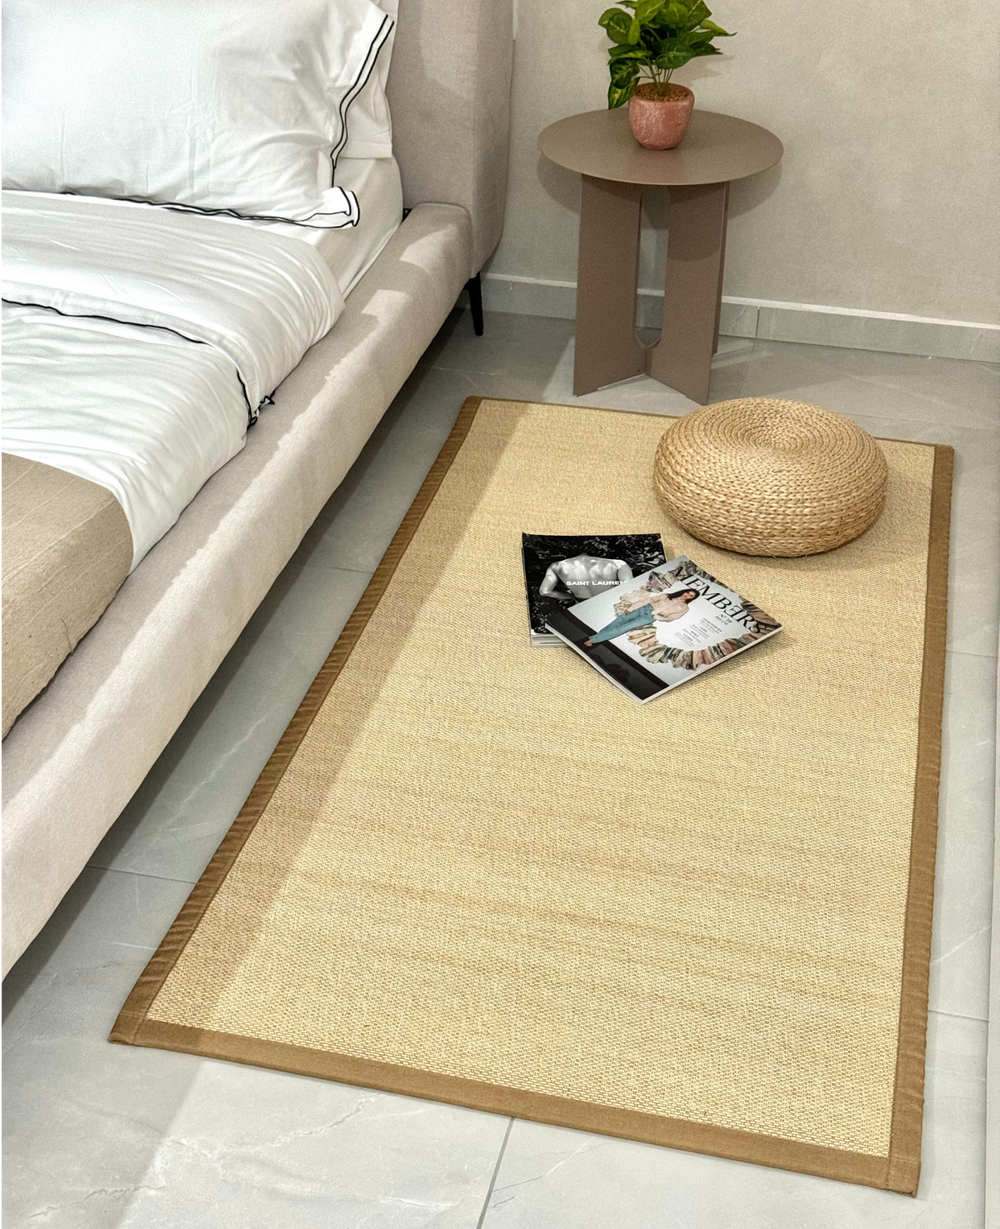 שטיח טאטאמי במבוק 90*180 - במכירה מוקדמת